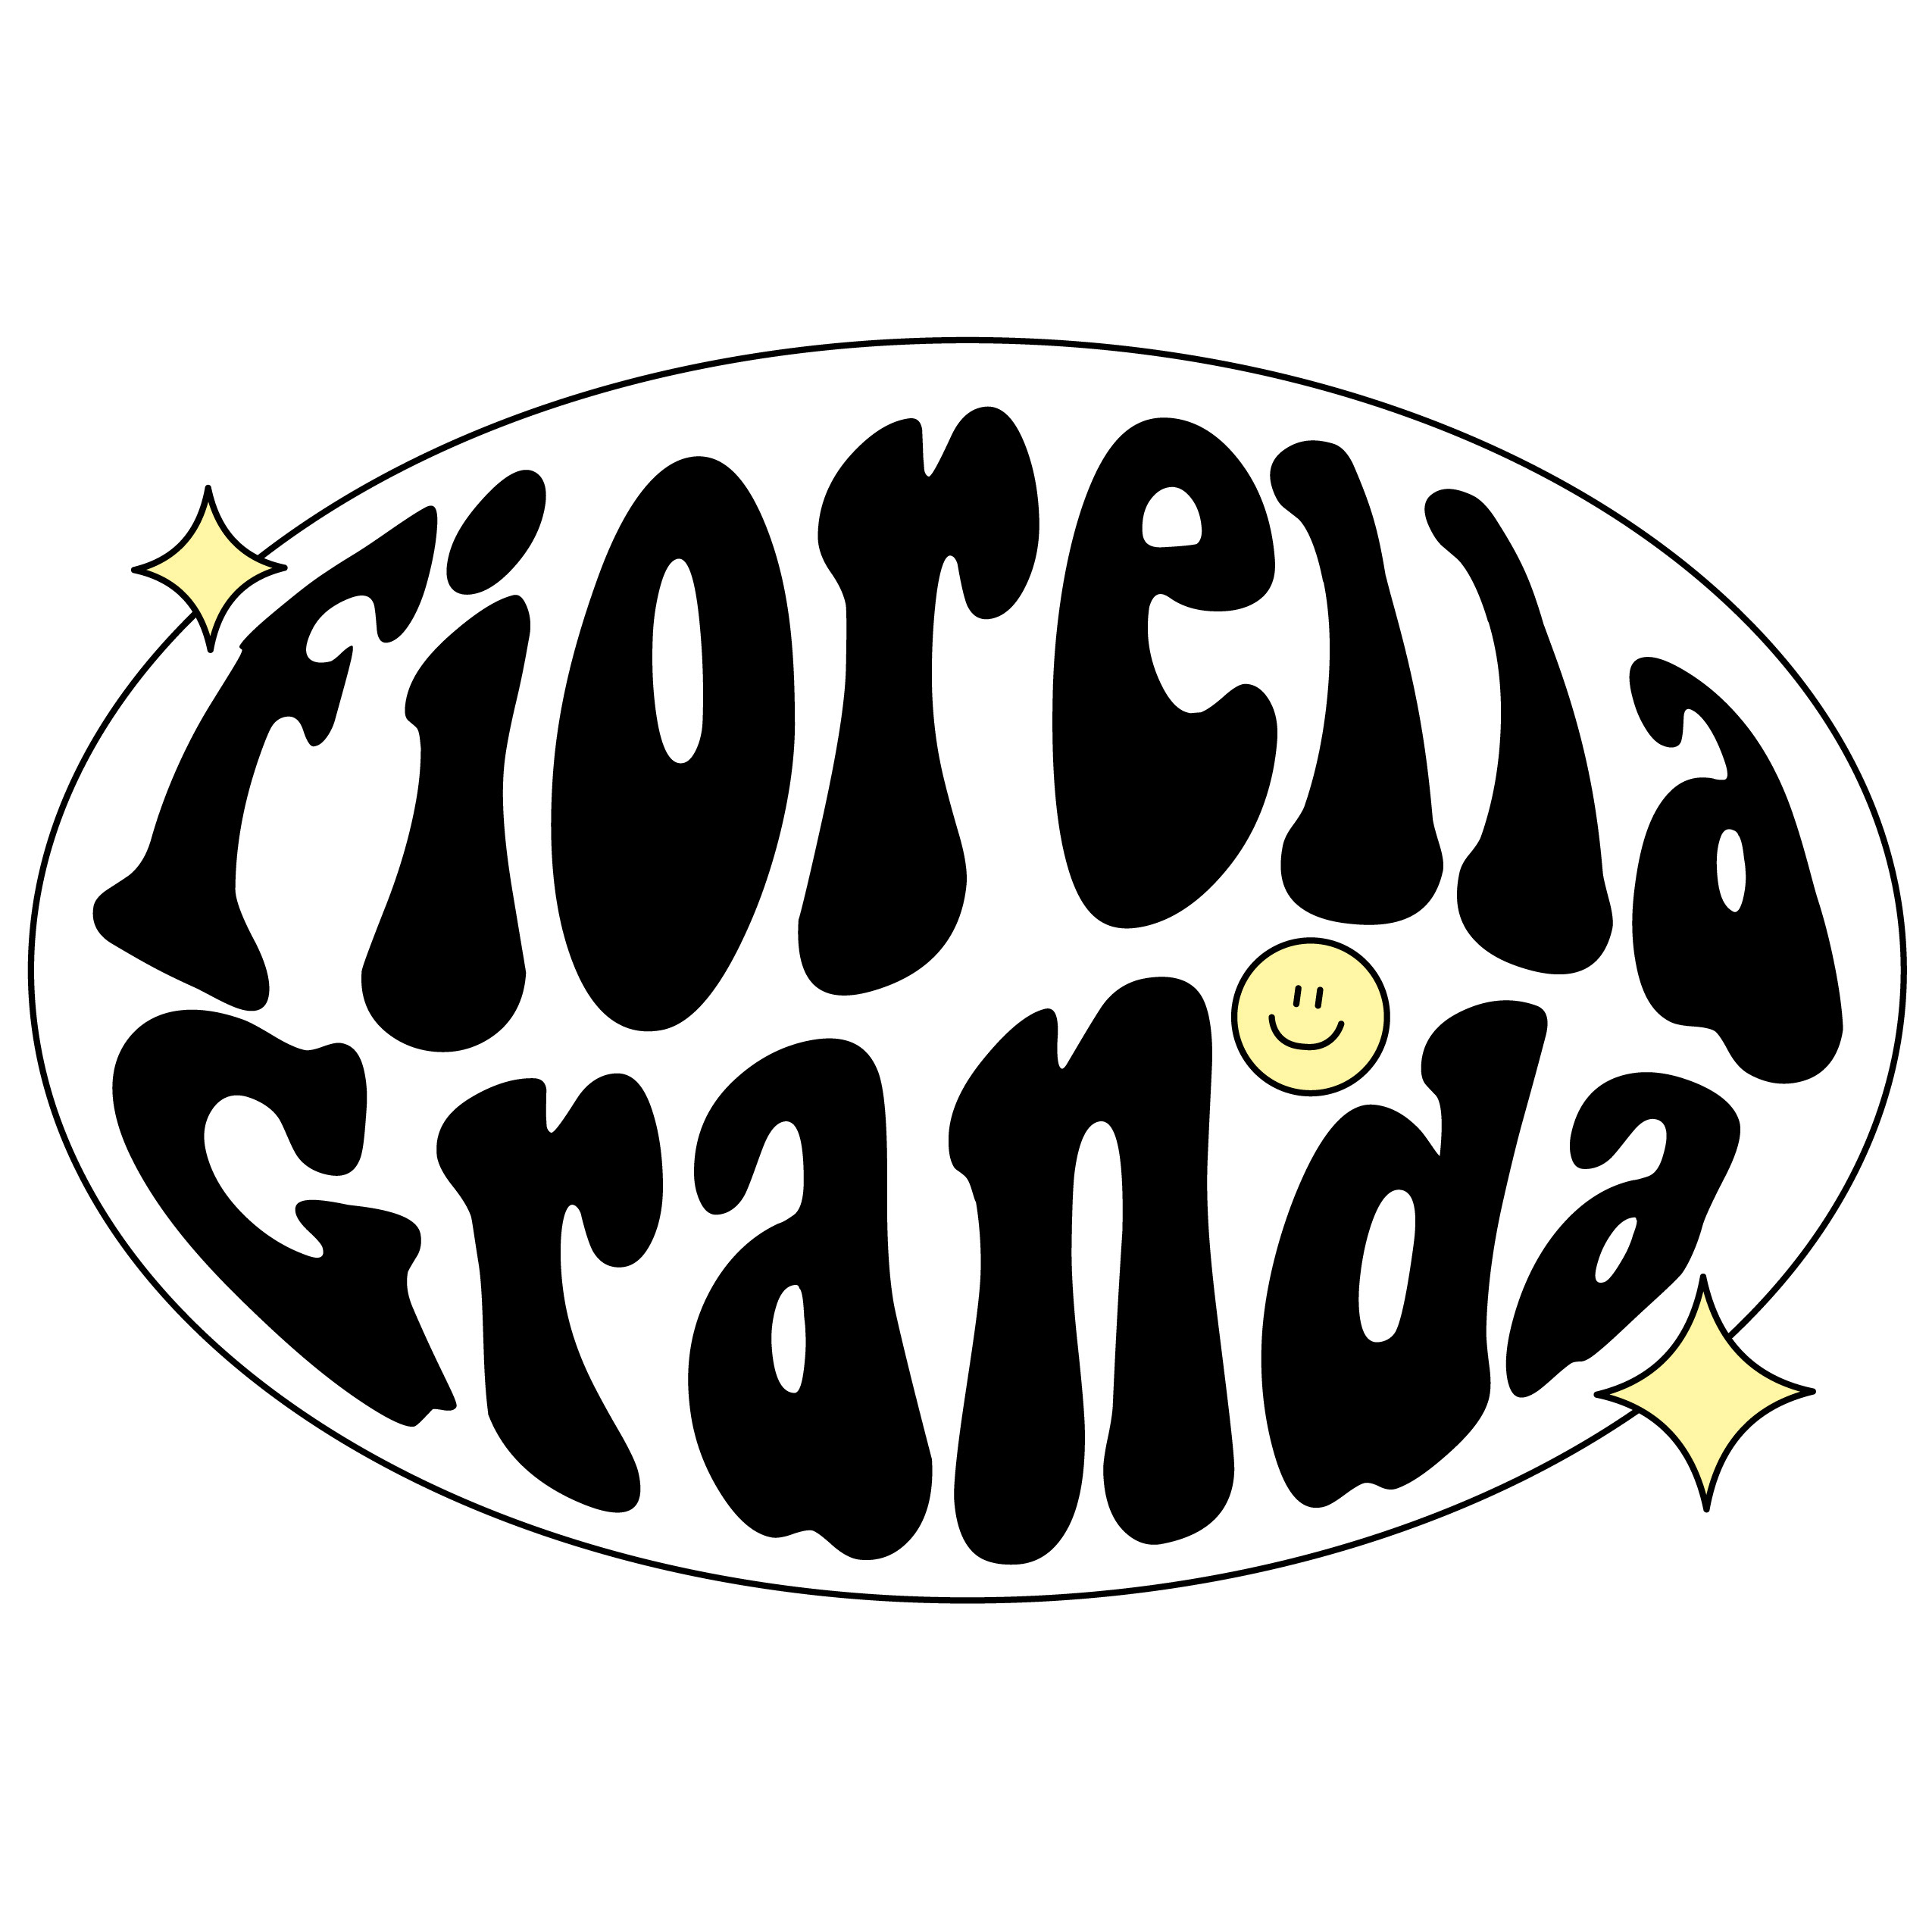 Fiorella Granda